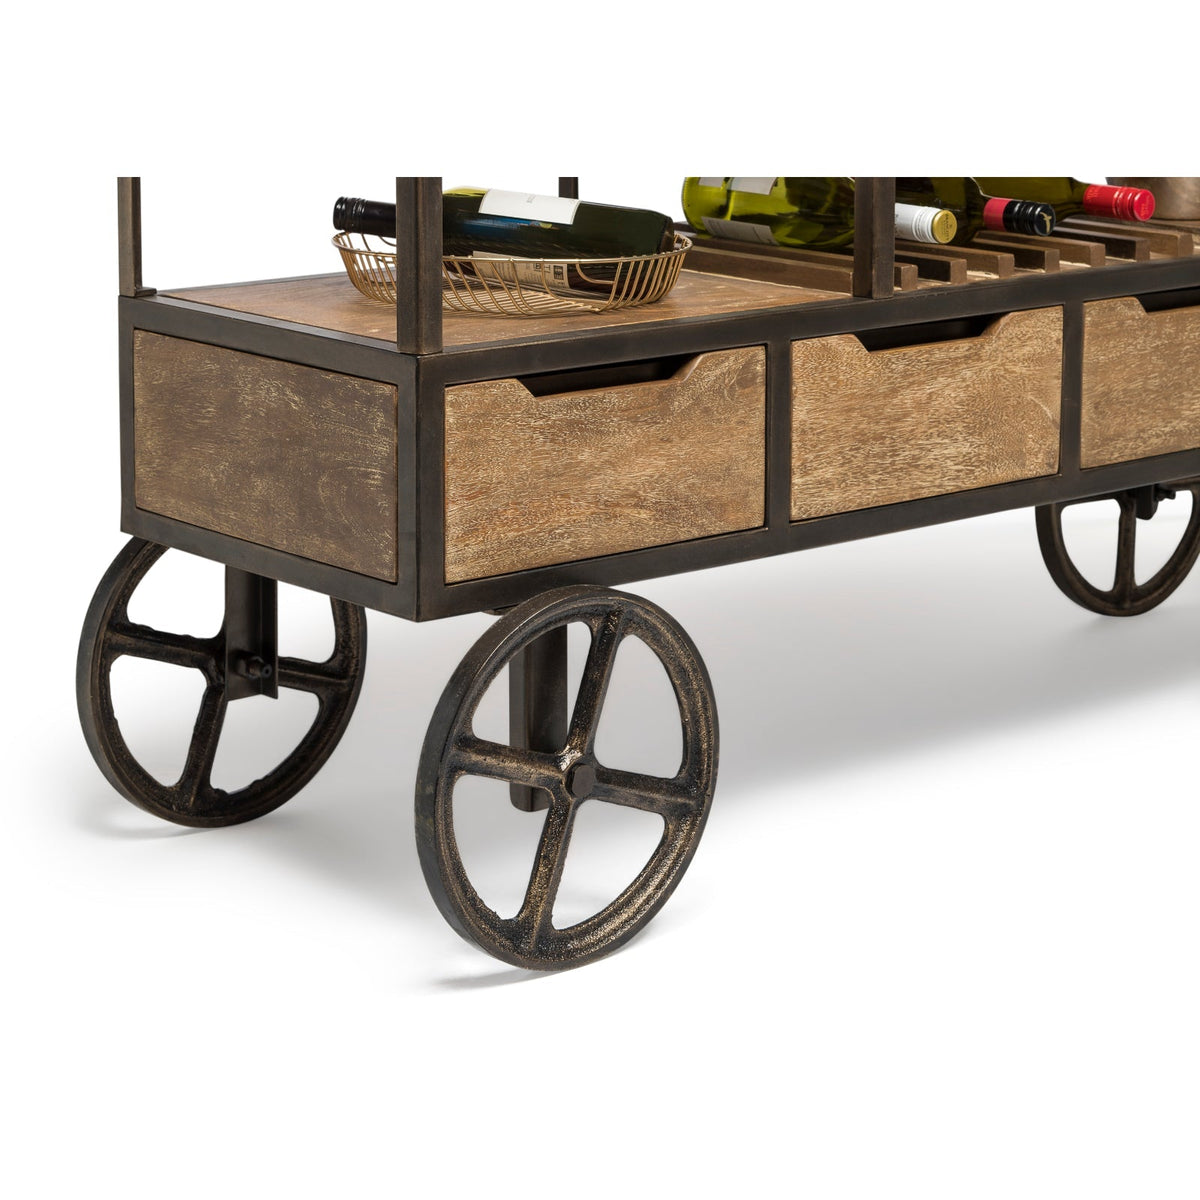 Wooden Bar Cart with Wine Storage - Wine Stash NZ